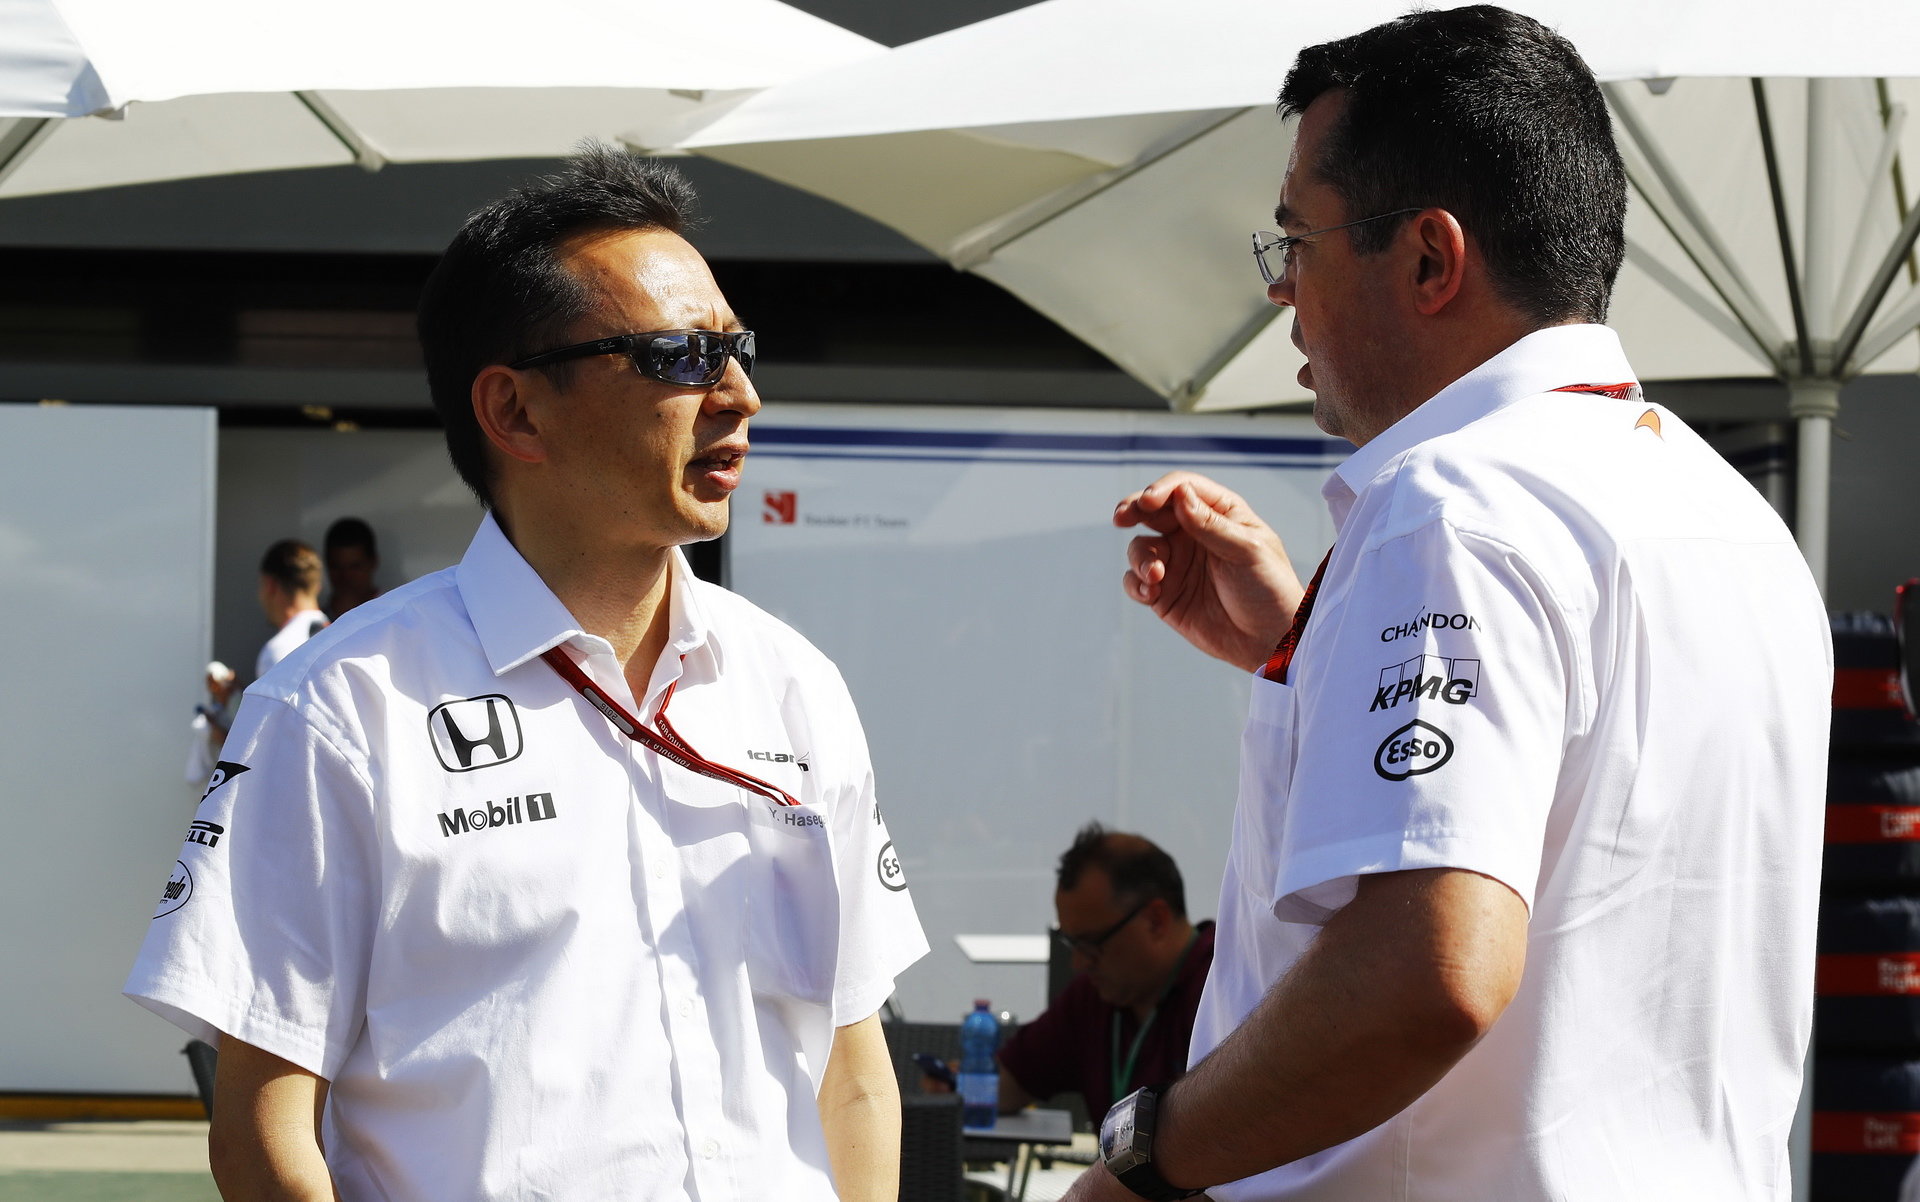 Tihle dva pánové jsou přesvědčeni, že McLaren bude už brzy zase vítězit (Hasegawa a Boullier)